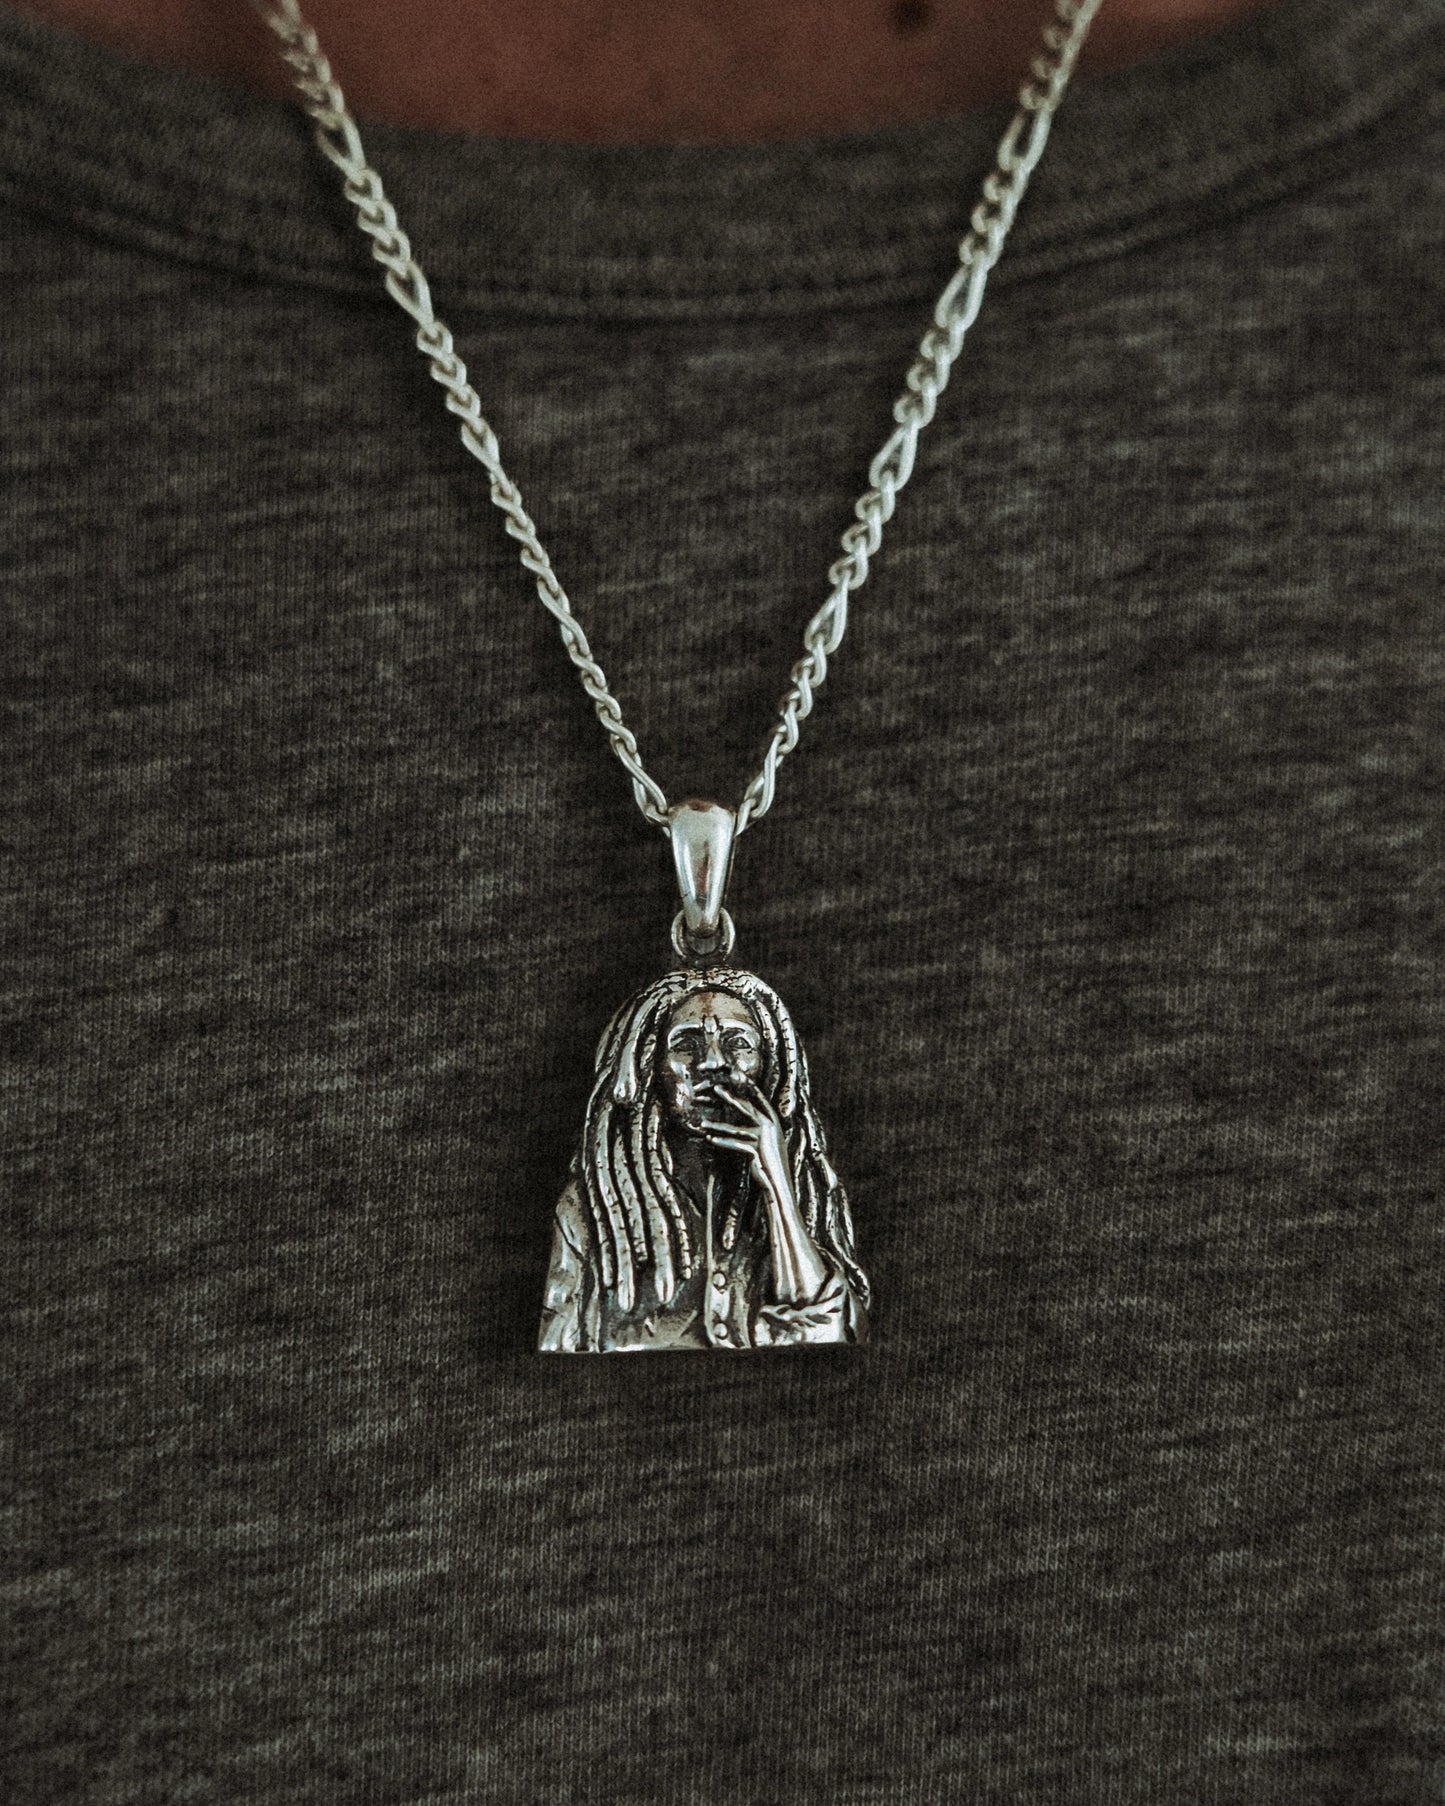 Bob Mafrlet pendant in silver